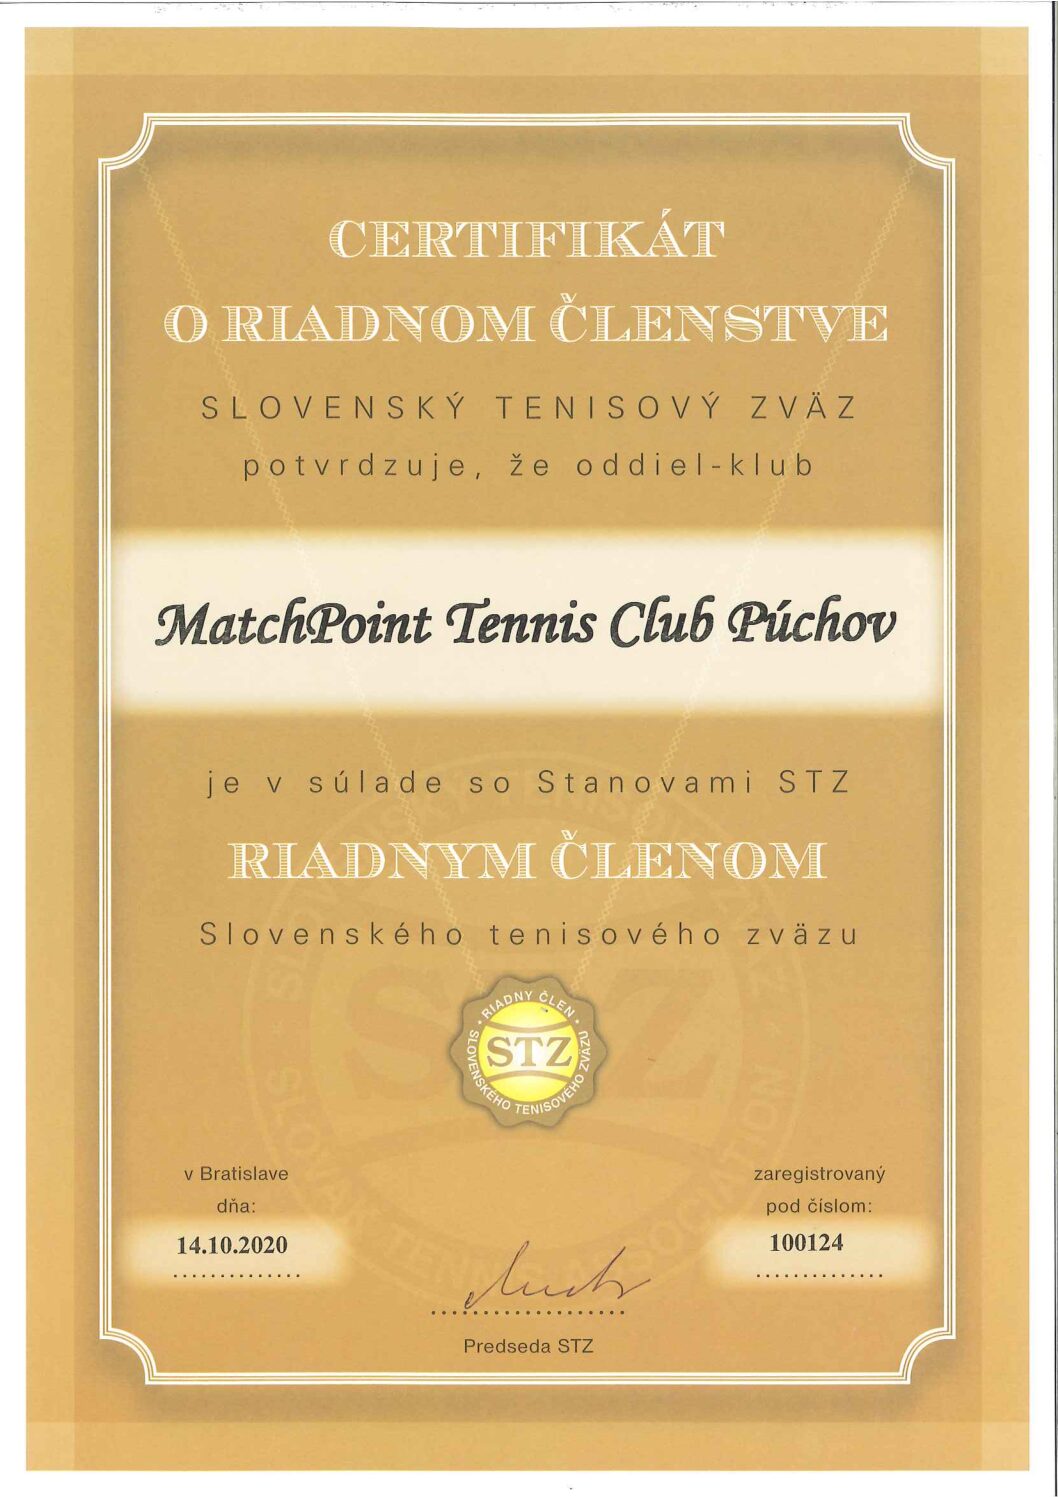 MatchPoint Tennis Club Púchov registrovaný ako riadny člen STZ